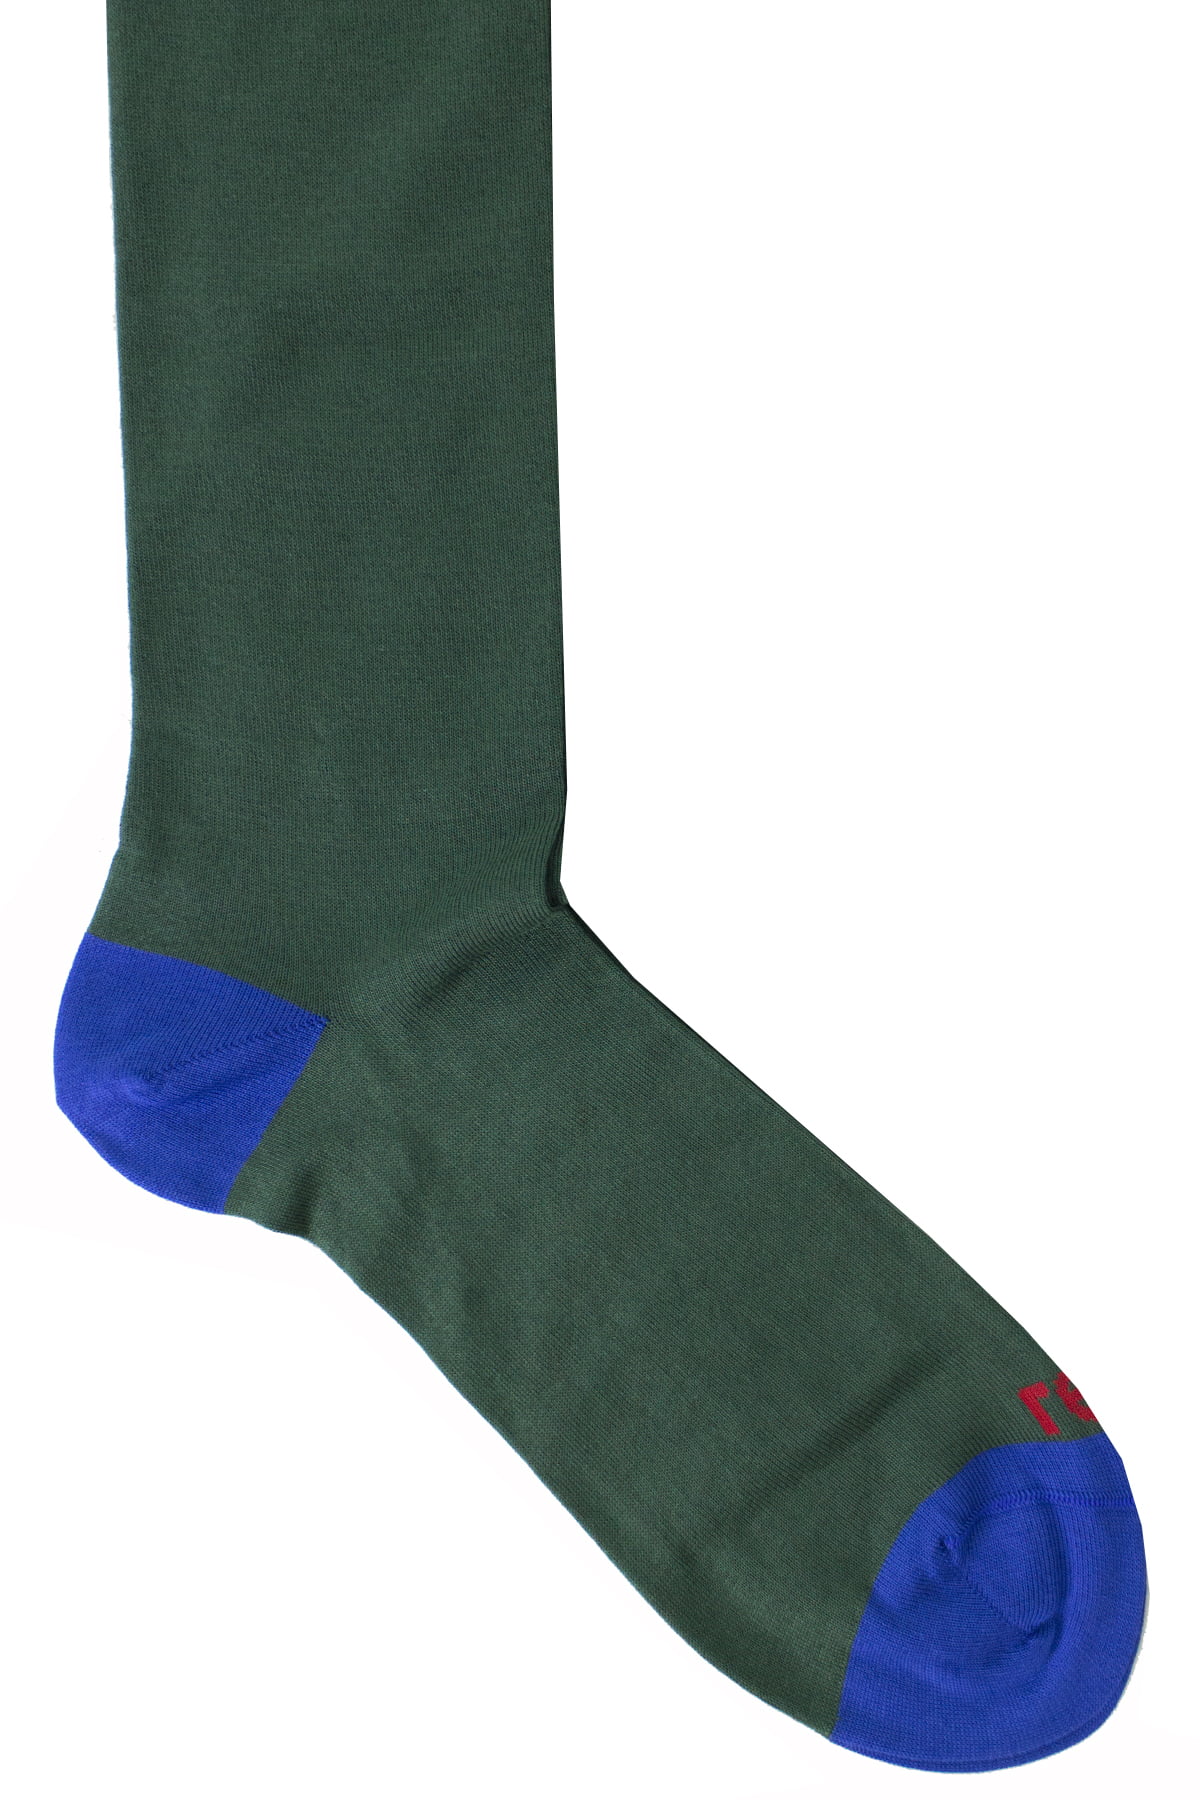 Calzini uomo verde tinta unita con bordino bluette invernali lunghezza ginocchio